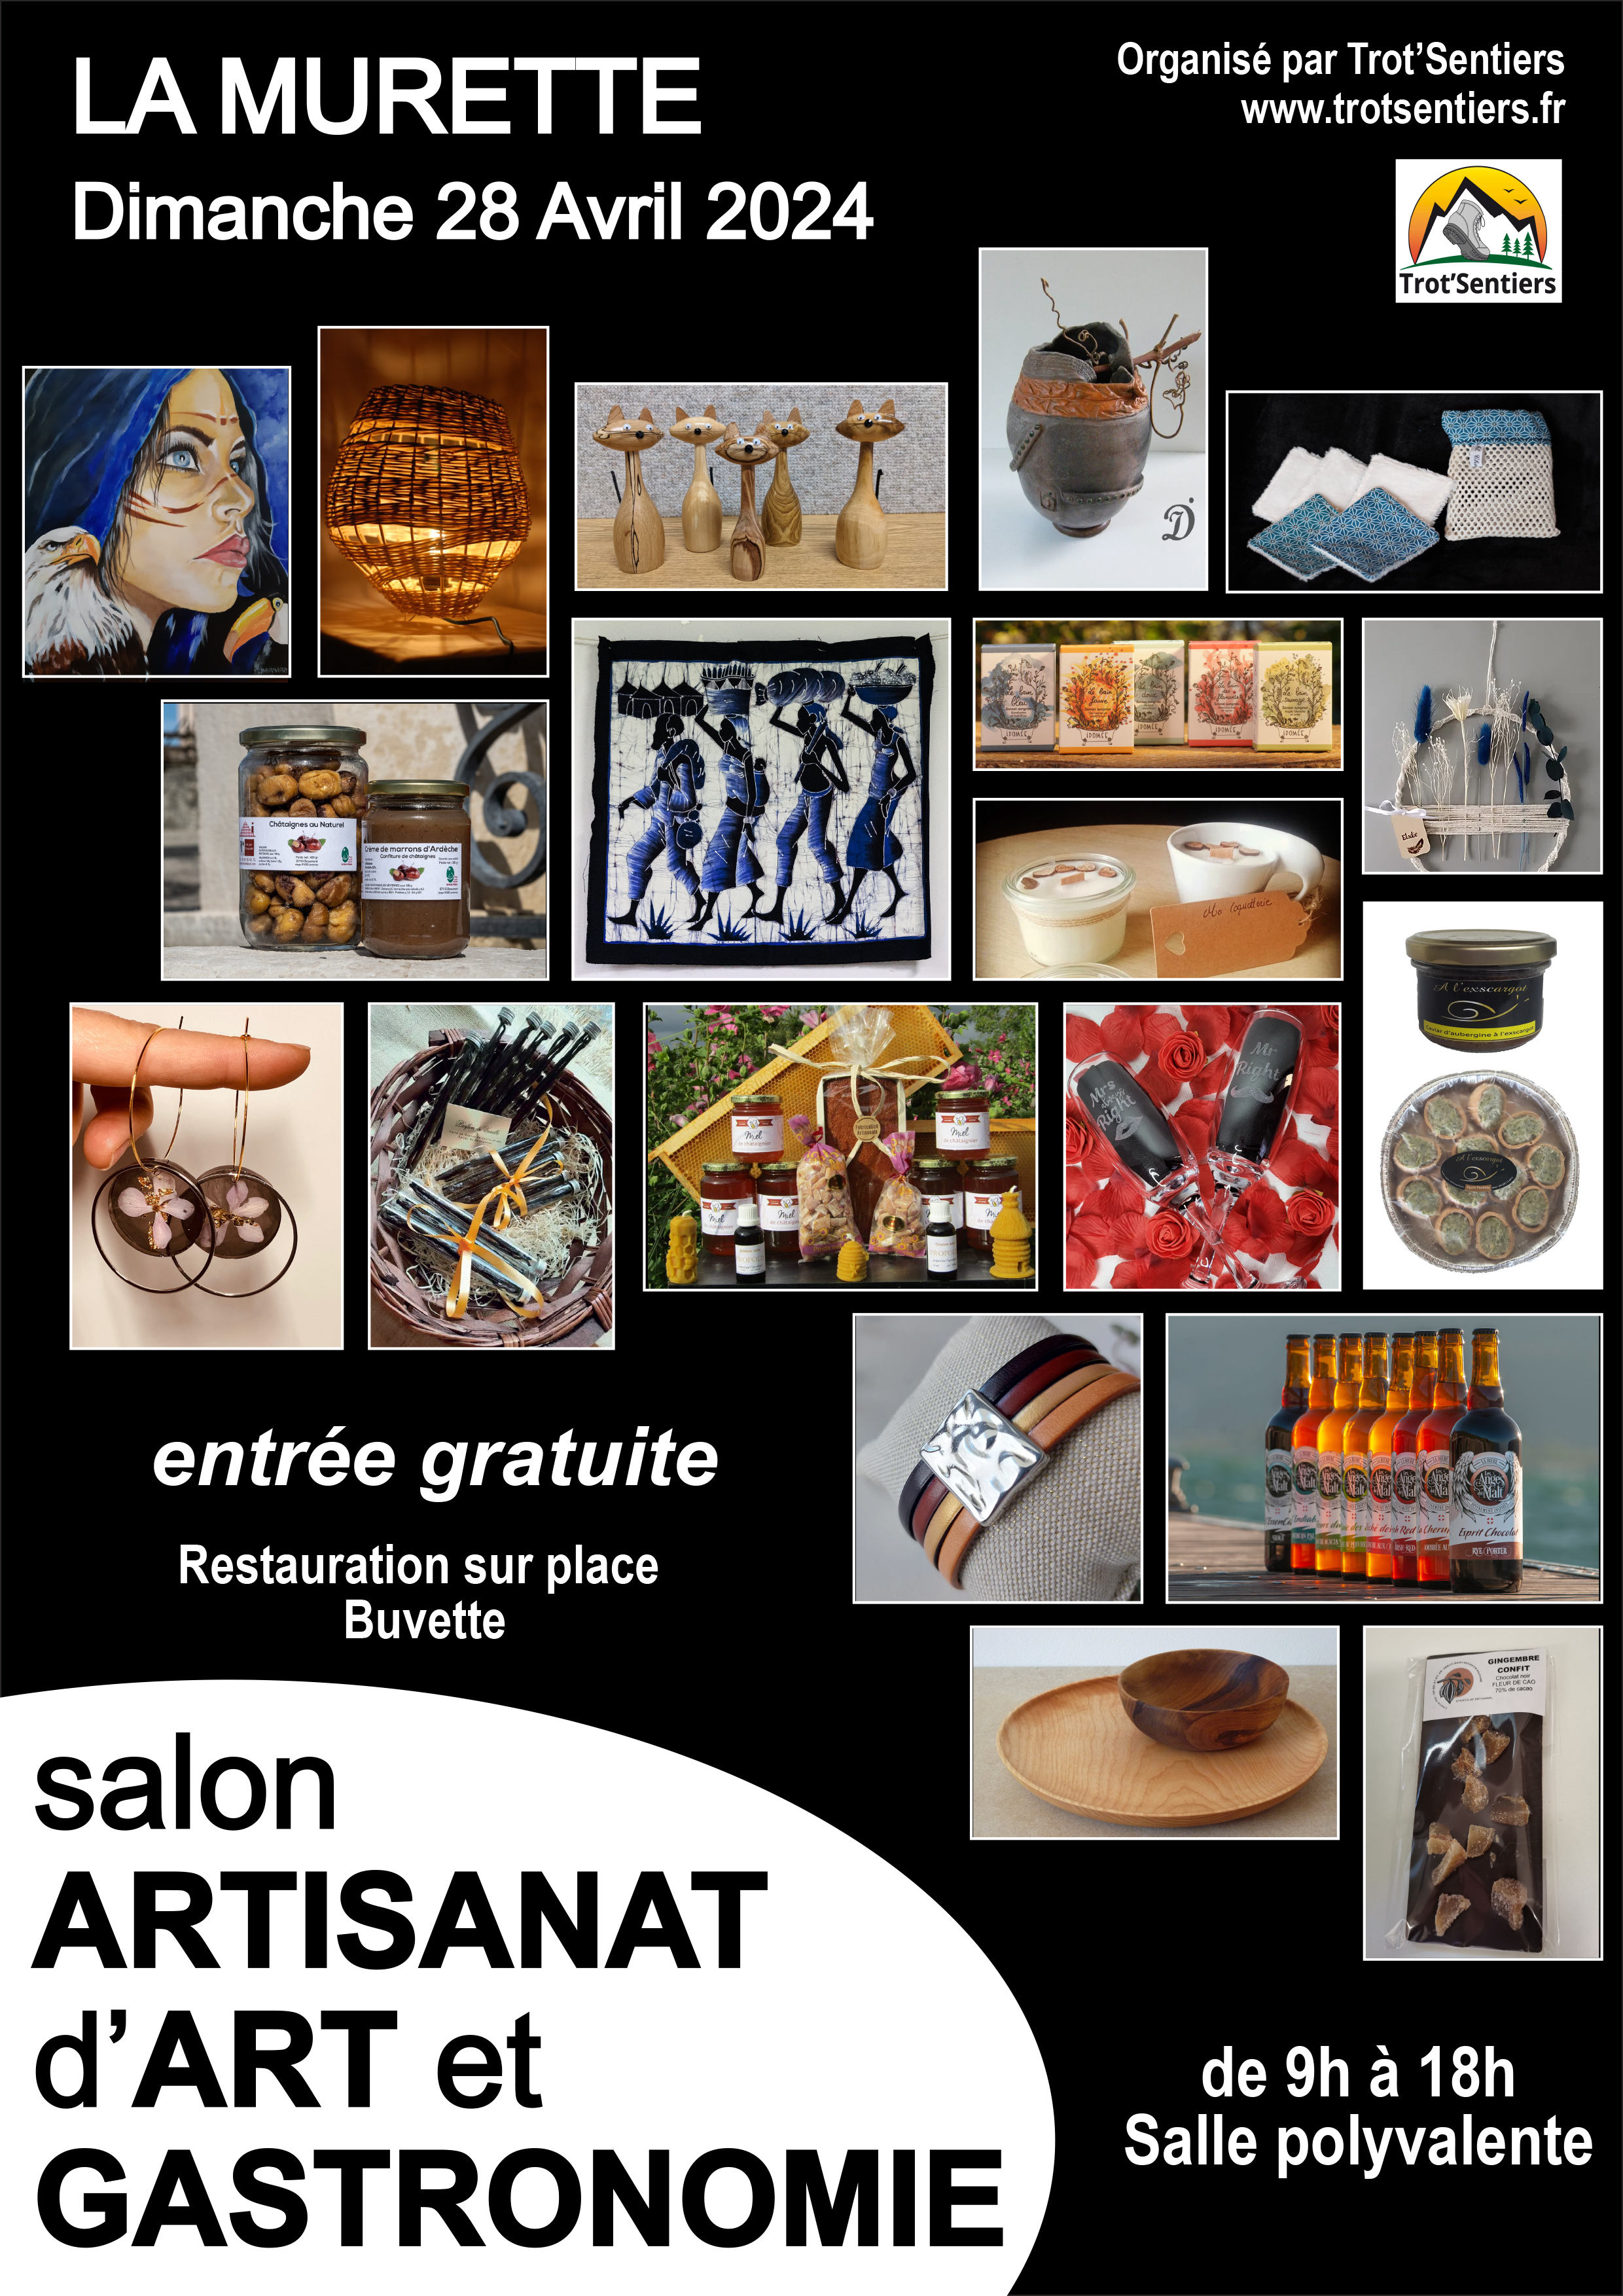 Salon : Artisanat d'art et gastronomie